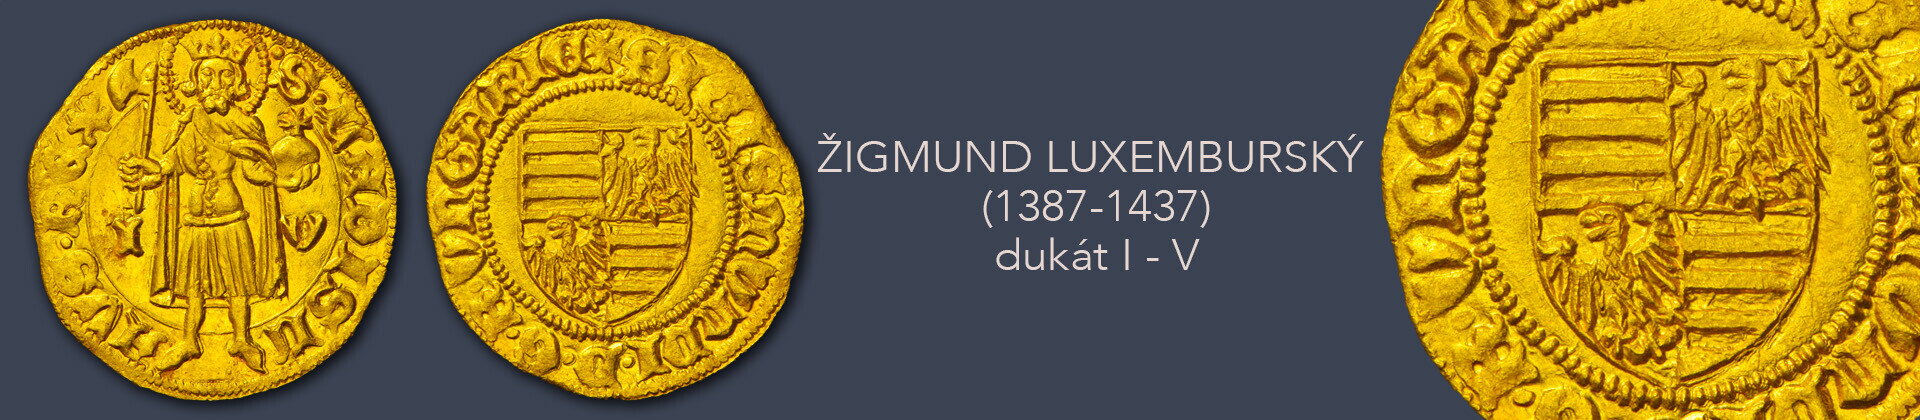 Žigmund Luxemburský - dukát I-V